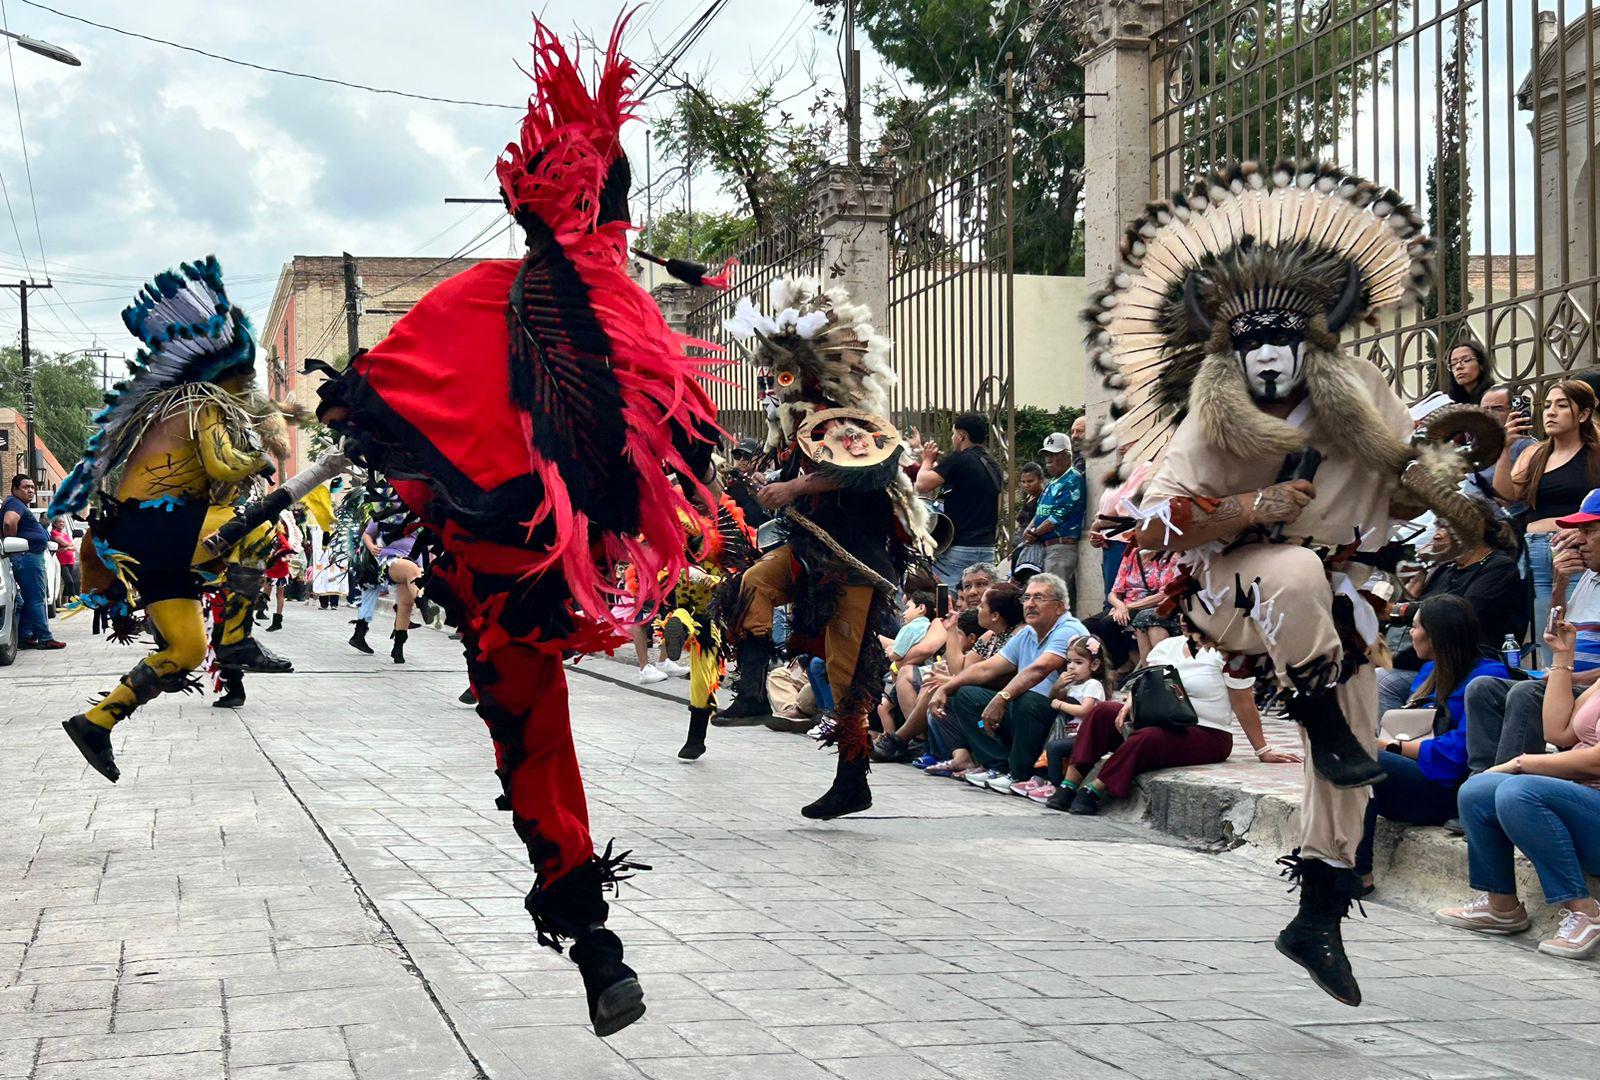 $!Destreza, habilidad y devoción se conjugan en las danzas lipan apache, un reflejo vibrante de su rica herencia cultural.